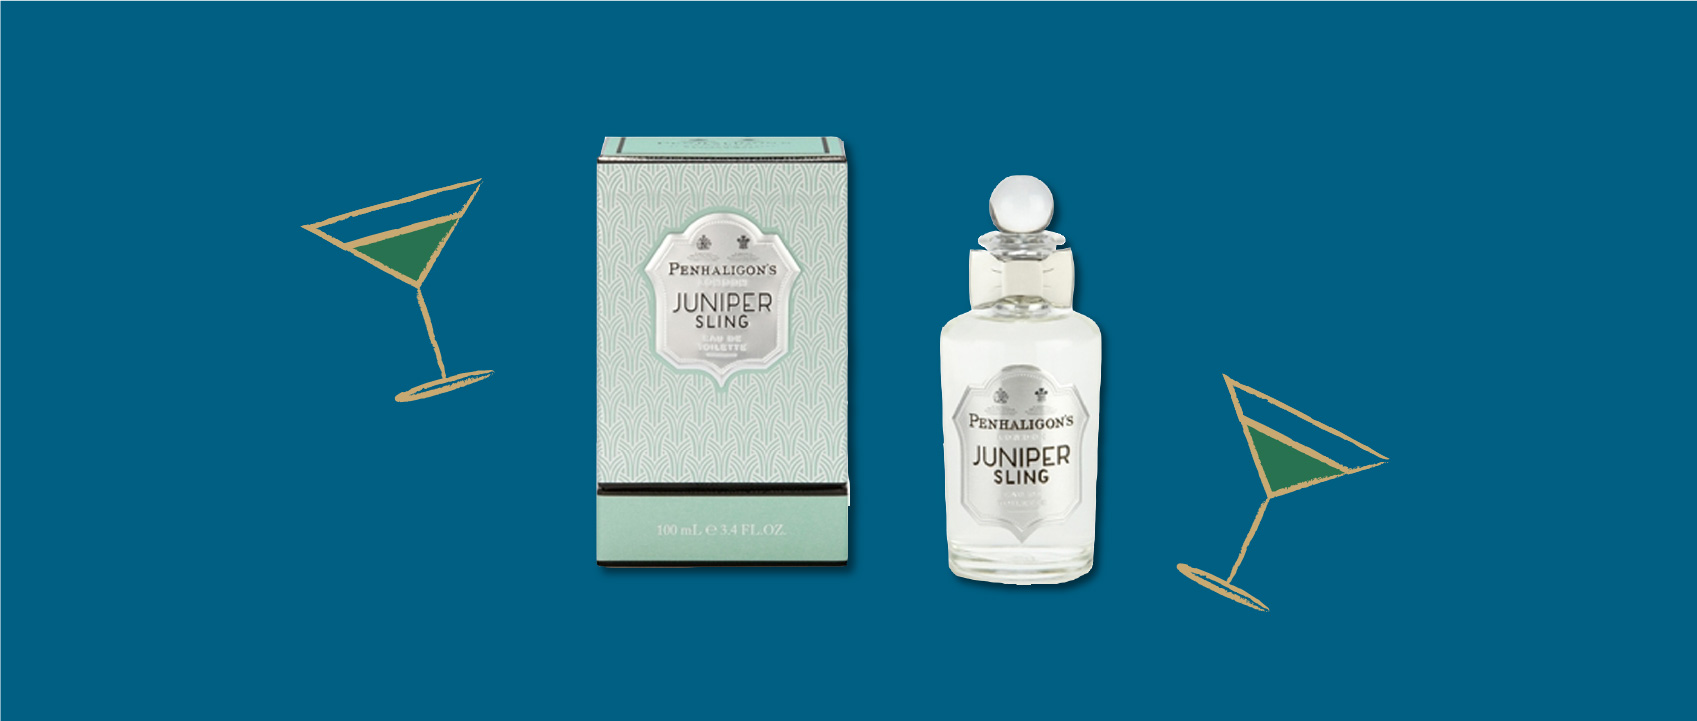 bottle of juniper sling perfume by penhaligons